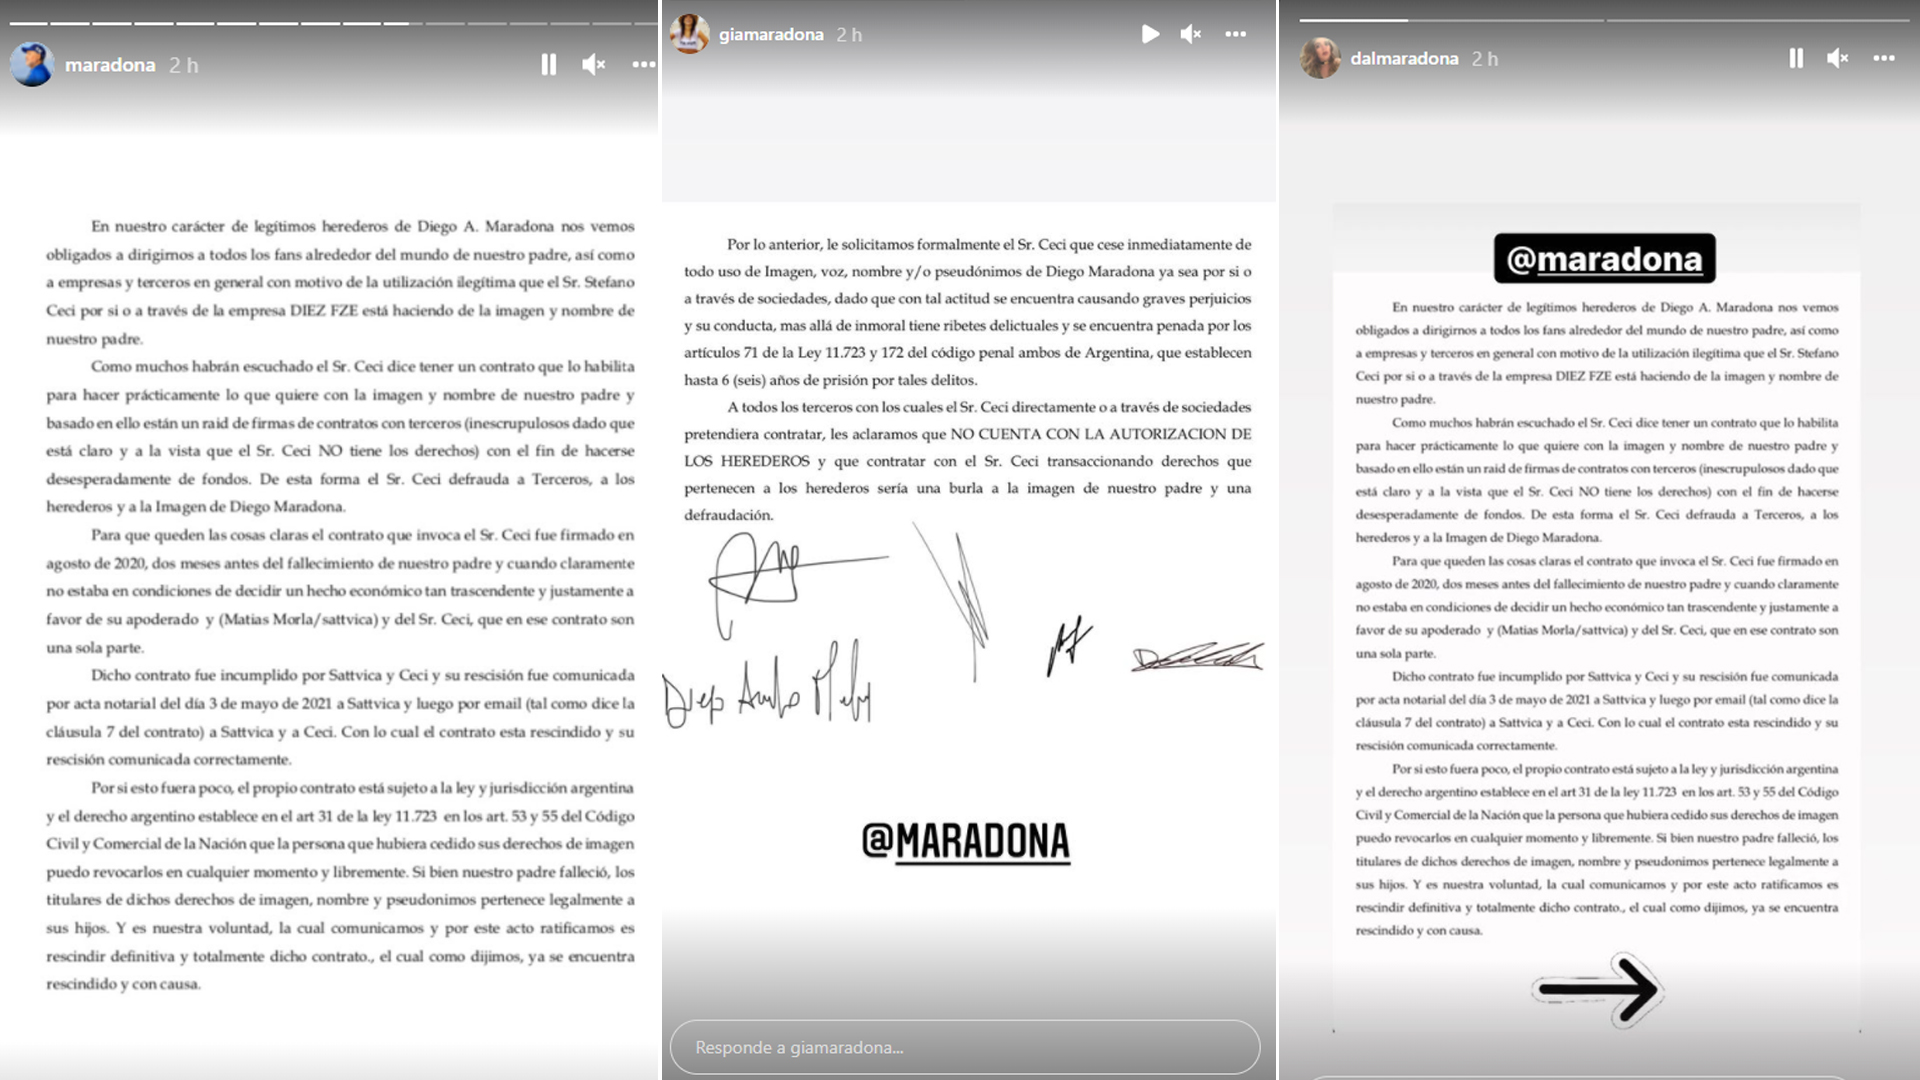 La nuova dichiarazione dei cinque figli di Maradona contro Stéfano Ceci